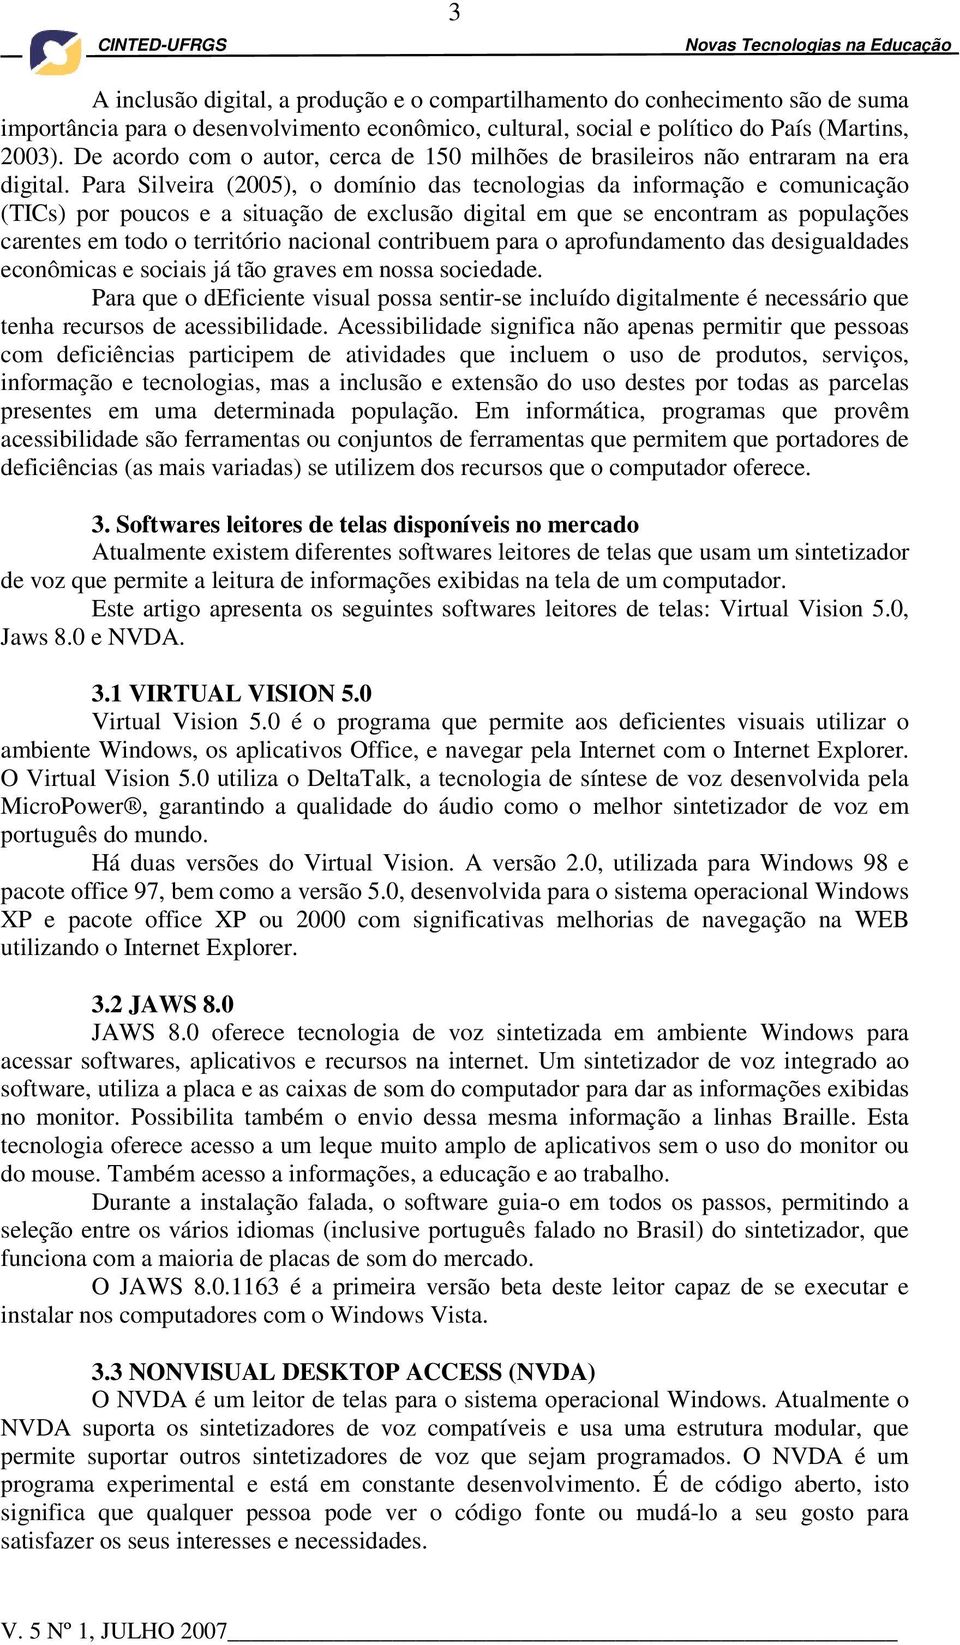 Para Silveira (2005), o domínio das tecnologias da informação e comunicação (TICs) por poucos e a situação de exclusão digital em que se encontram as populações carentes em todo o território nacional